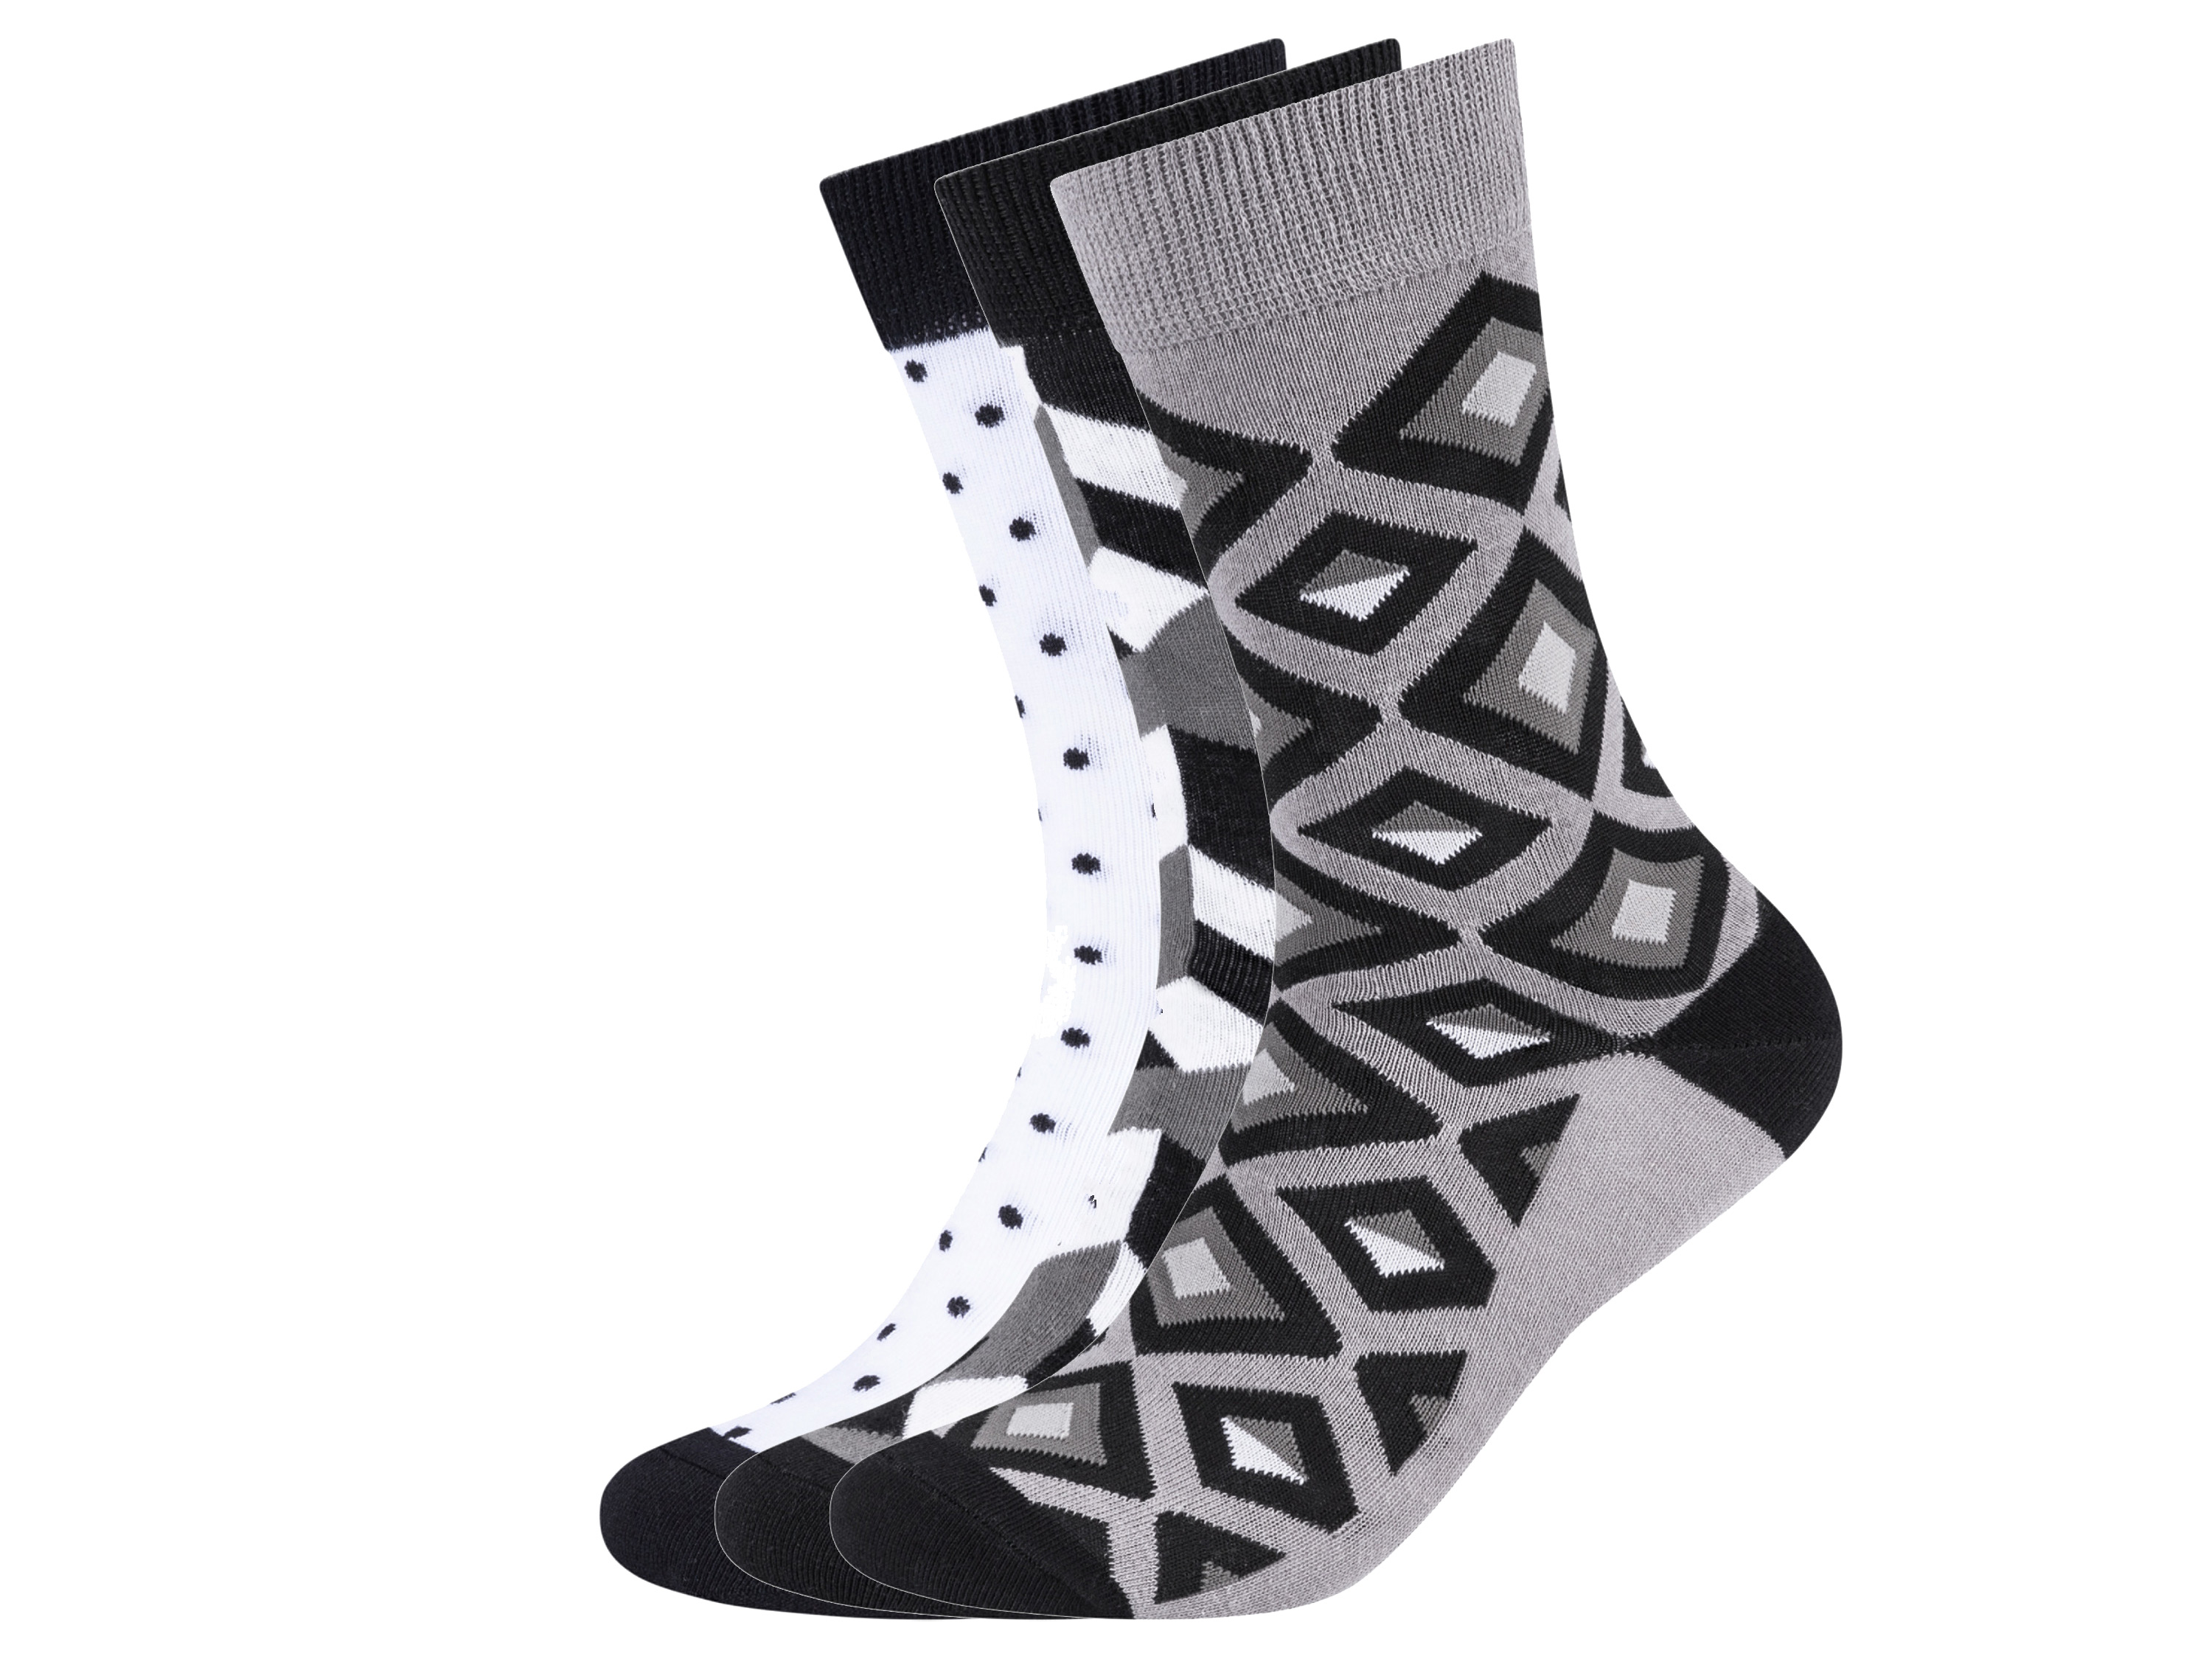 Fun Socks 3 paar sokken (41-46, Zwart en wit)